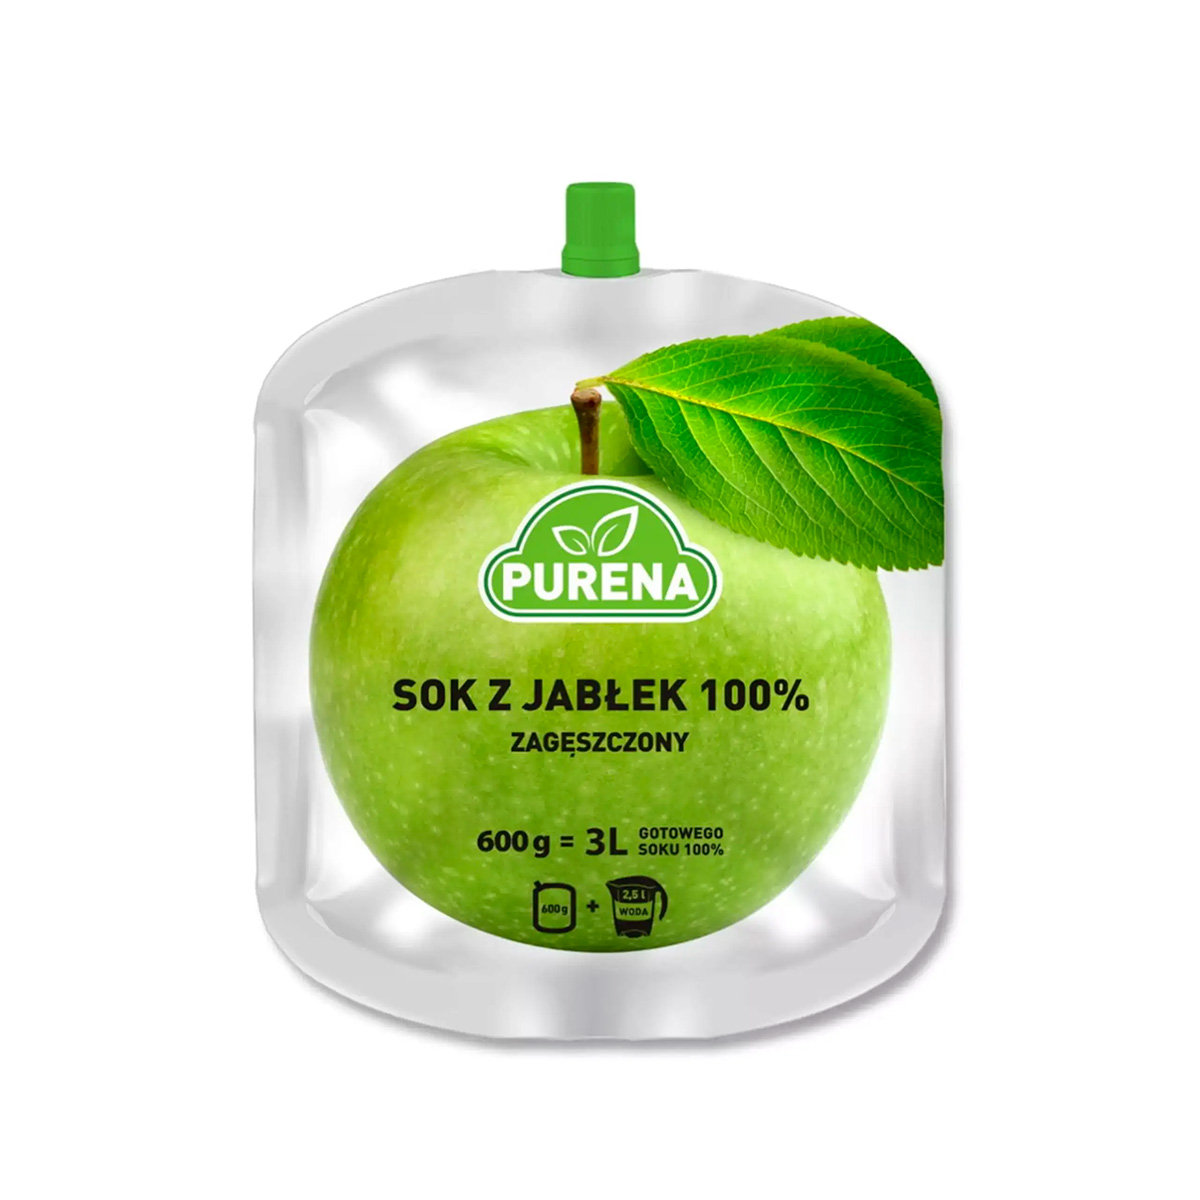 Purena Sok jabłkowy 100%, zagęszczony Purena, 600g